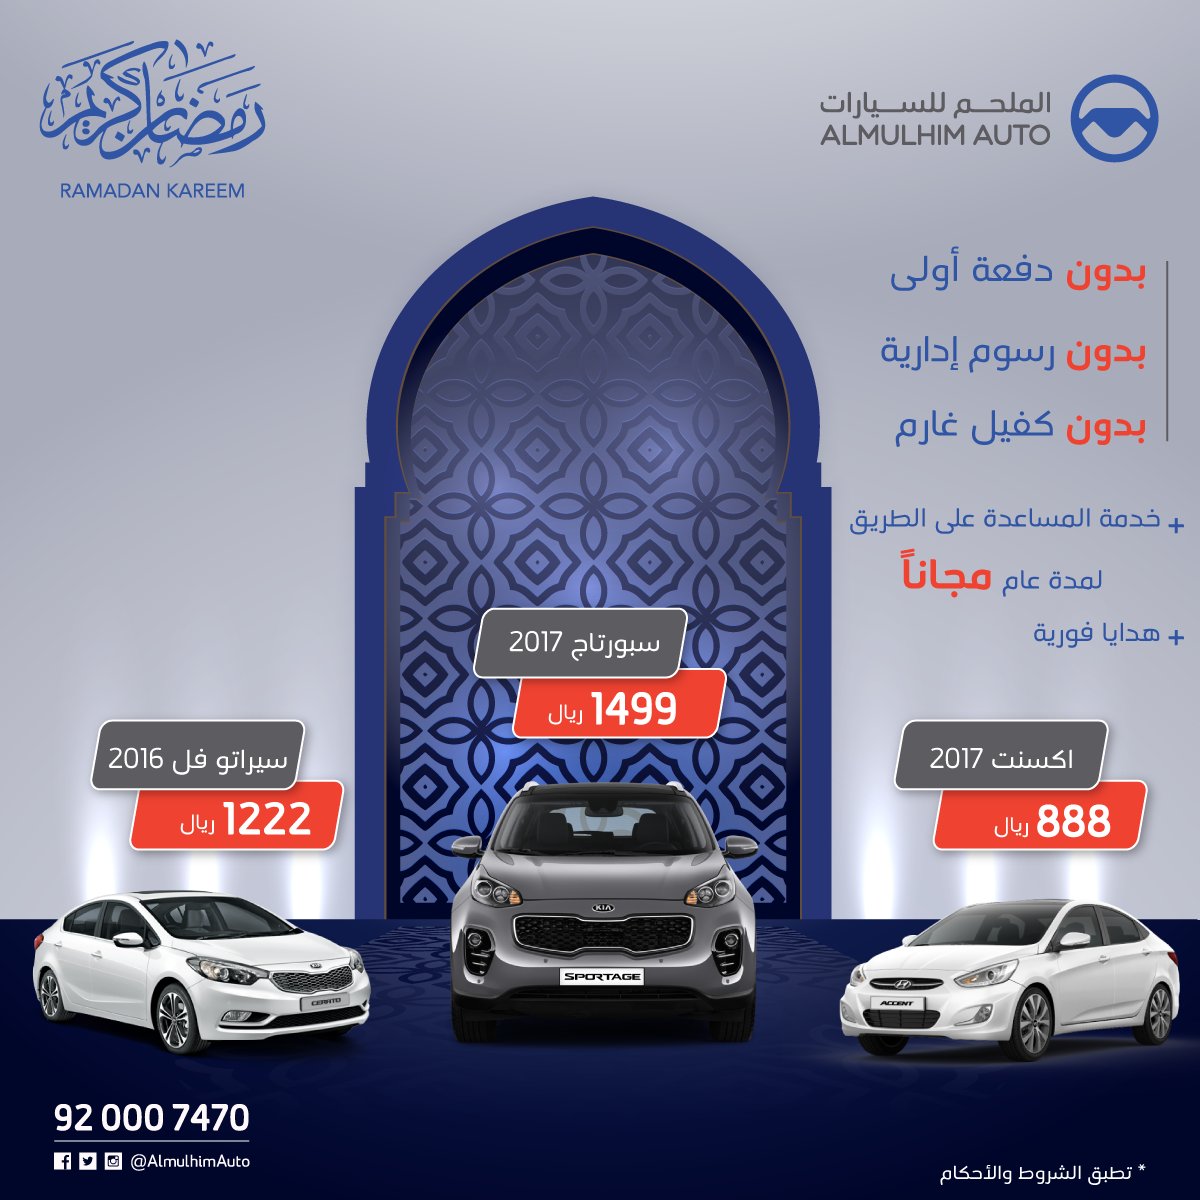 جميع عروض السيارات في شهر رمضان المبارك 2017 هذا العام 1438هـ 101